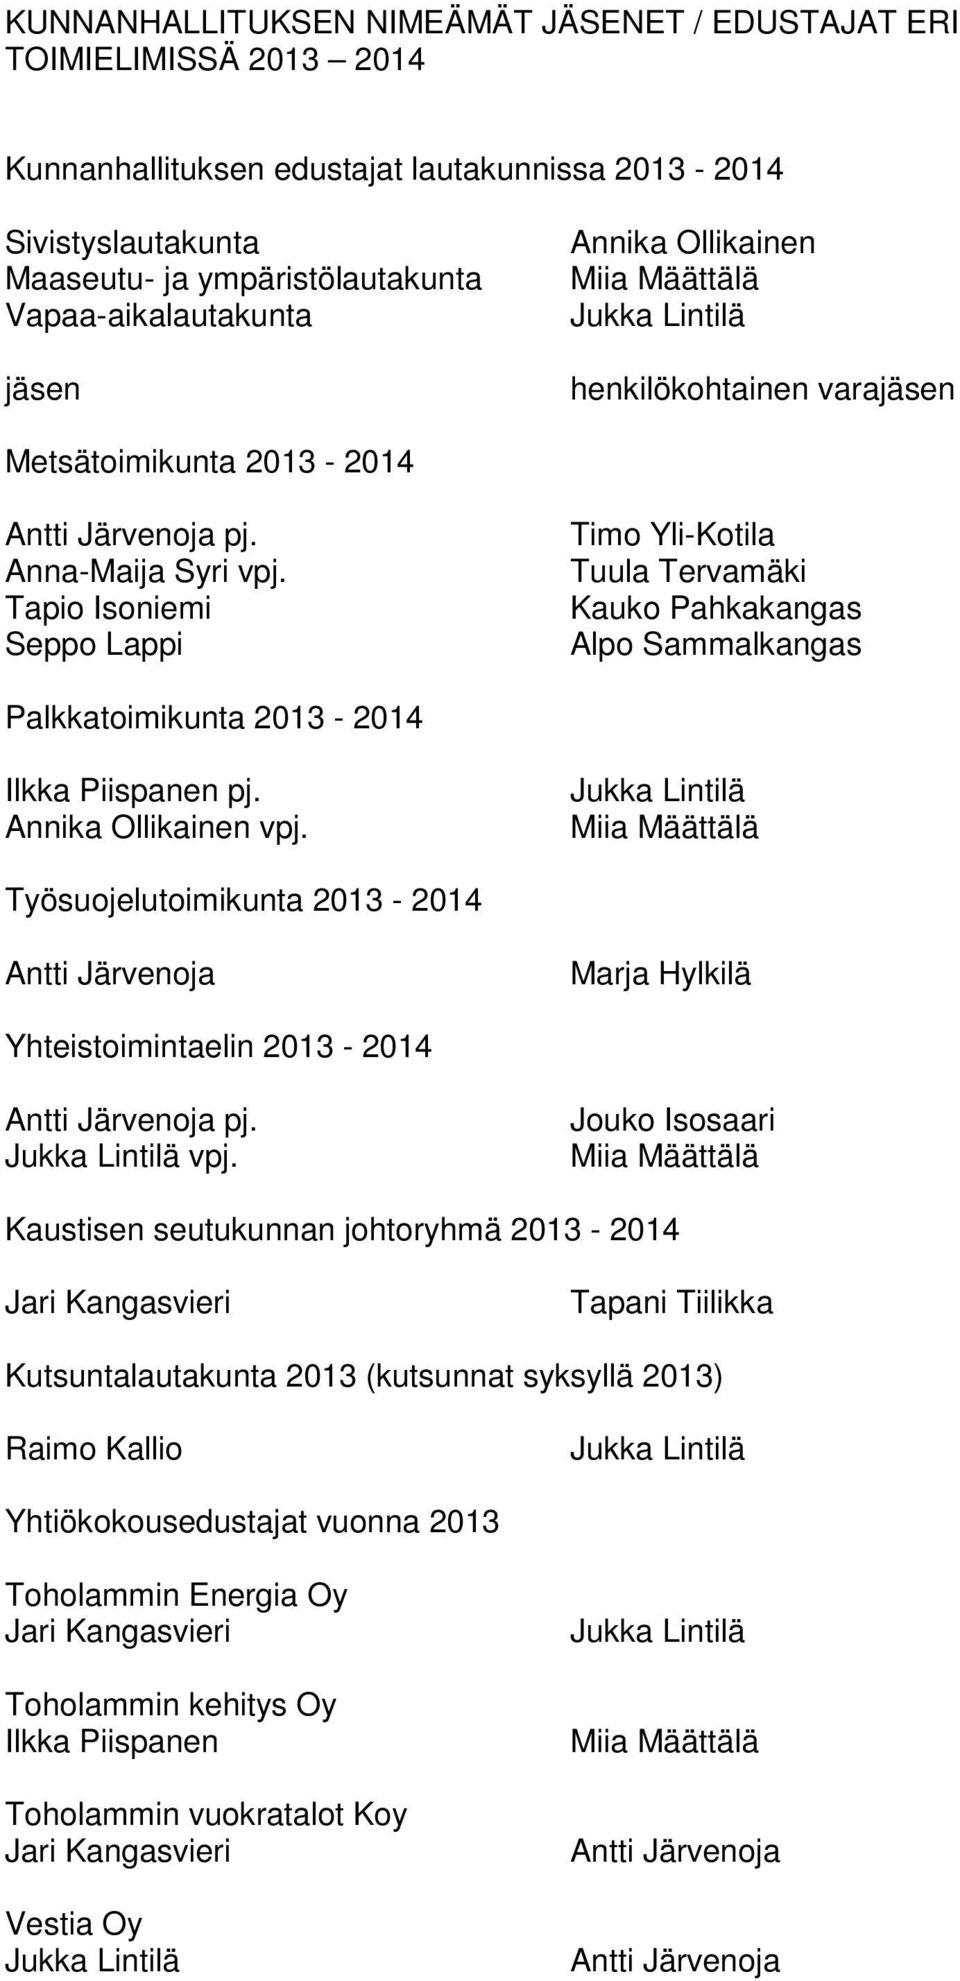 Tapio Isoniemi Seppo Lappi Timo Yli-Kotila Tuula Tervamäki Kauko Pahkakangas Alpo Sammalkangas Palkkatoimikunta 2013-2014 Ilkka Piispanen pj. Annika Ollikainen vpj.